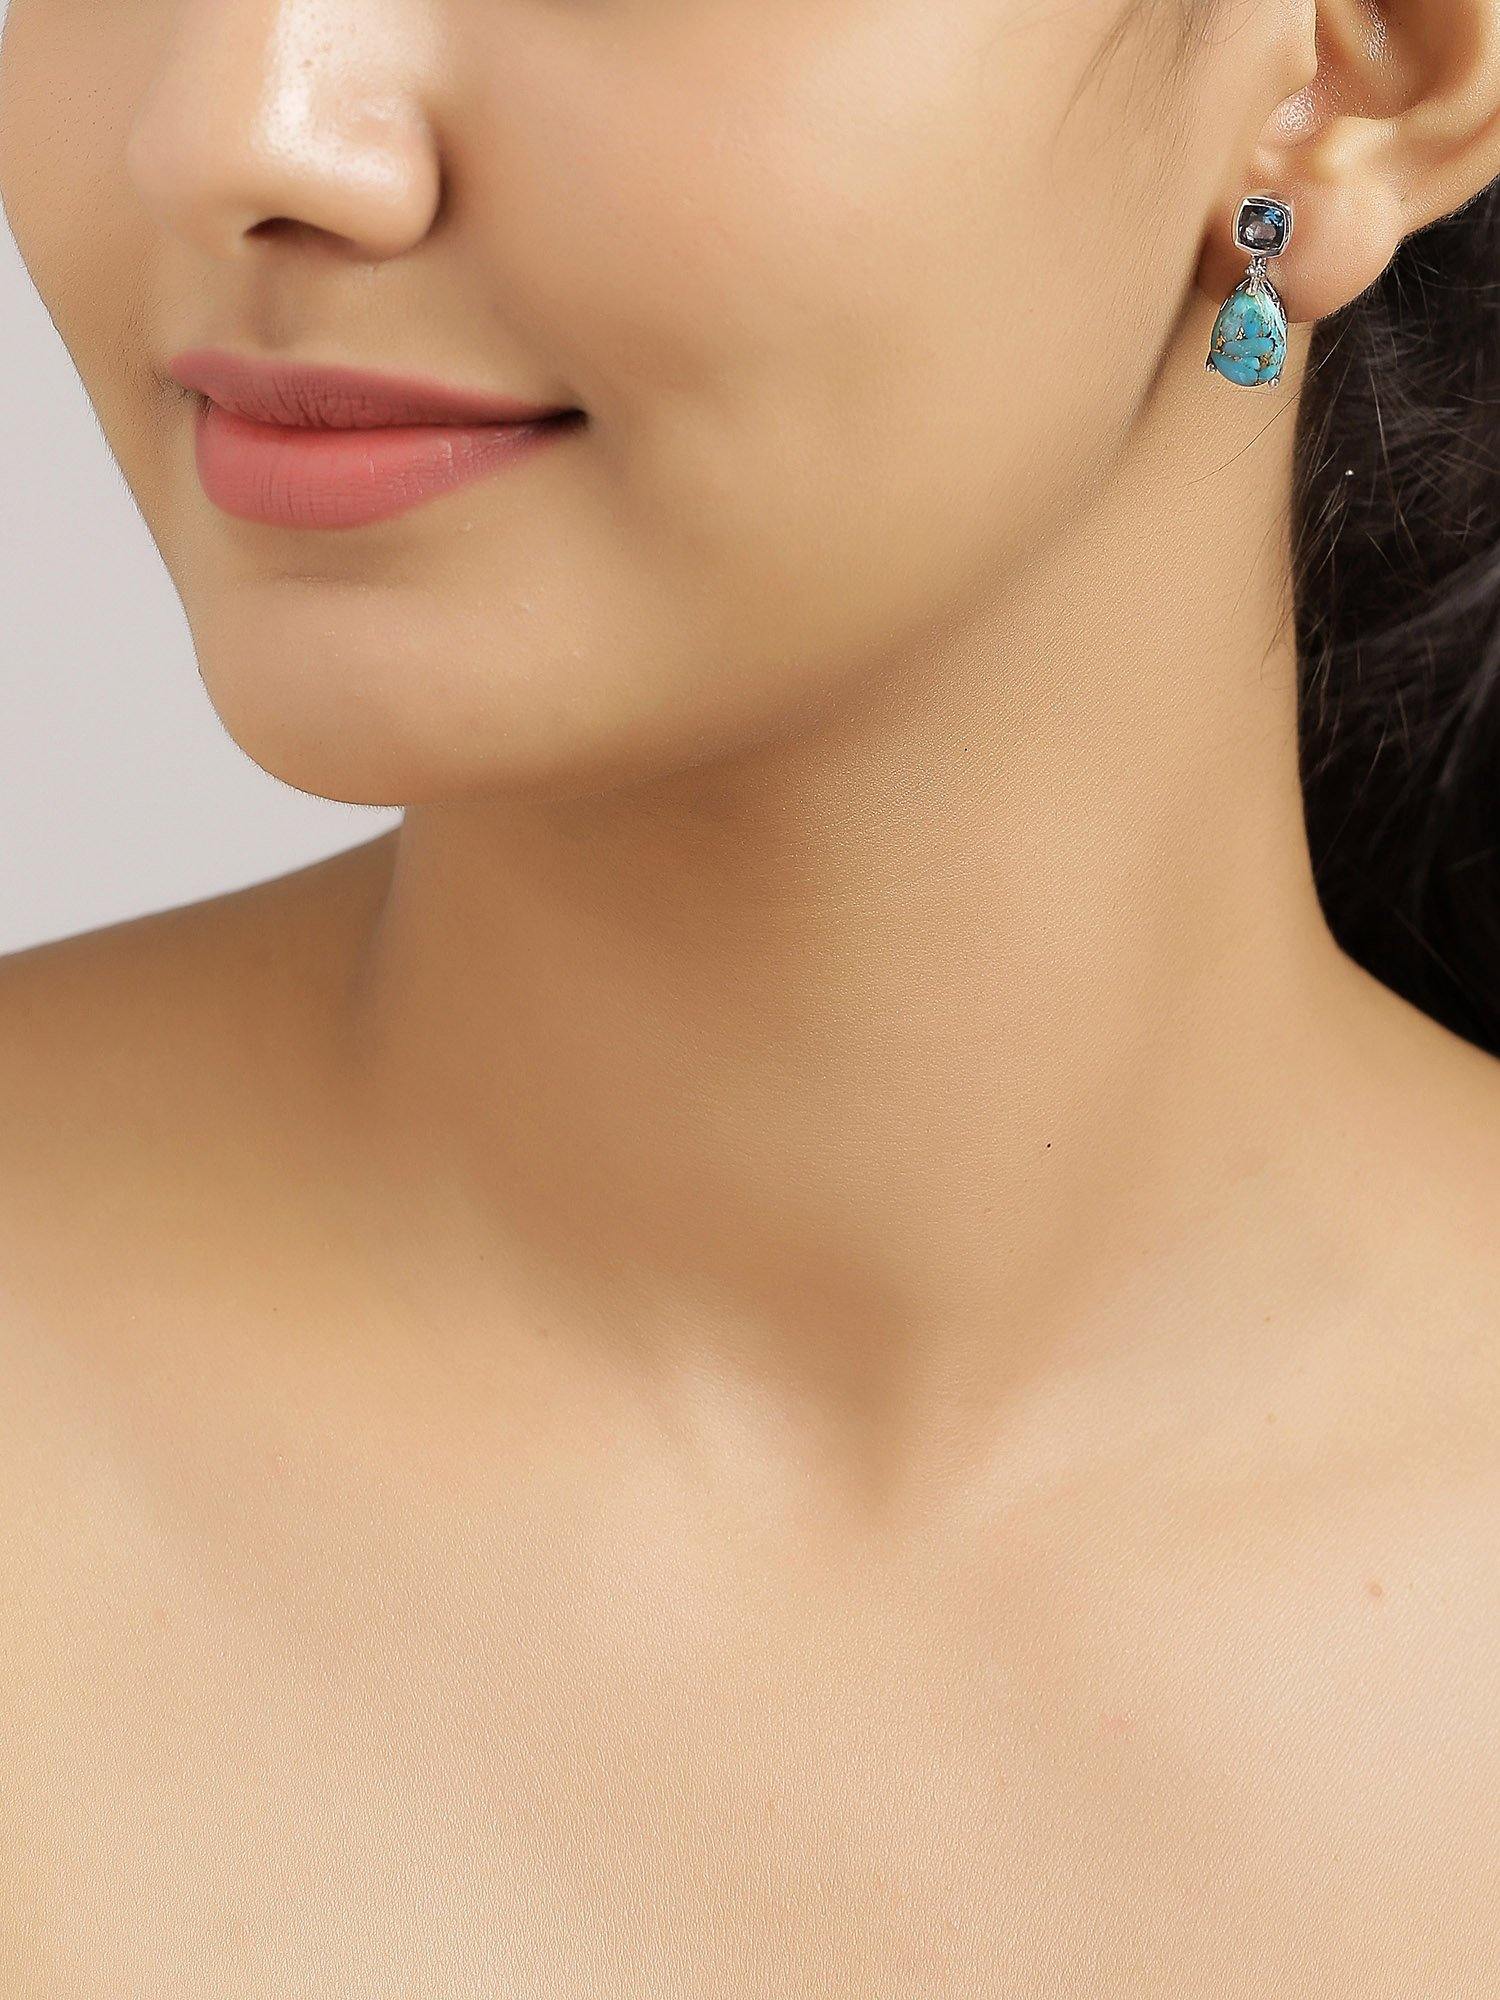 8.24 Ct. Blue Copper Turquoise Solid 925 Sterling Silver Teardrop Dangle Earrings Jewelry - YoTreasure